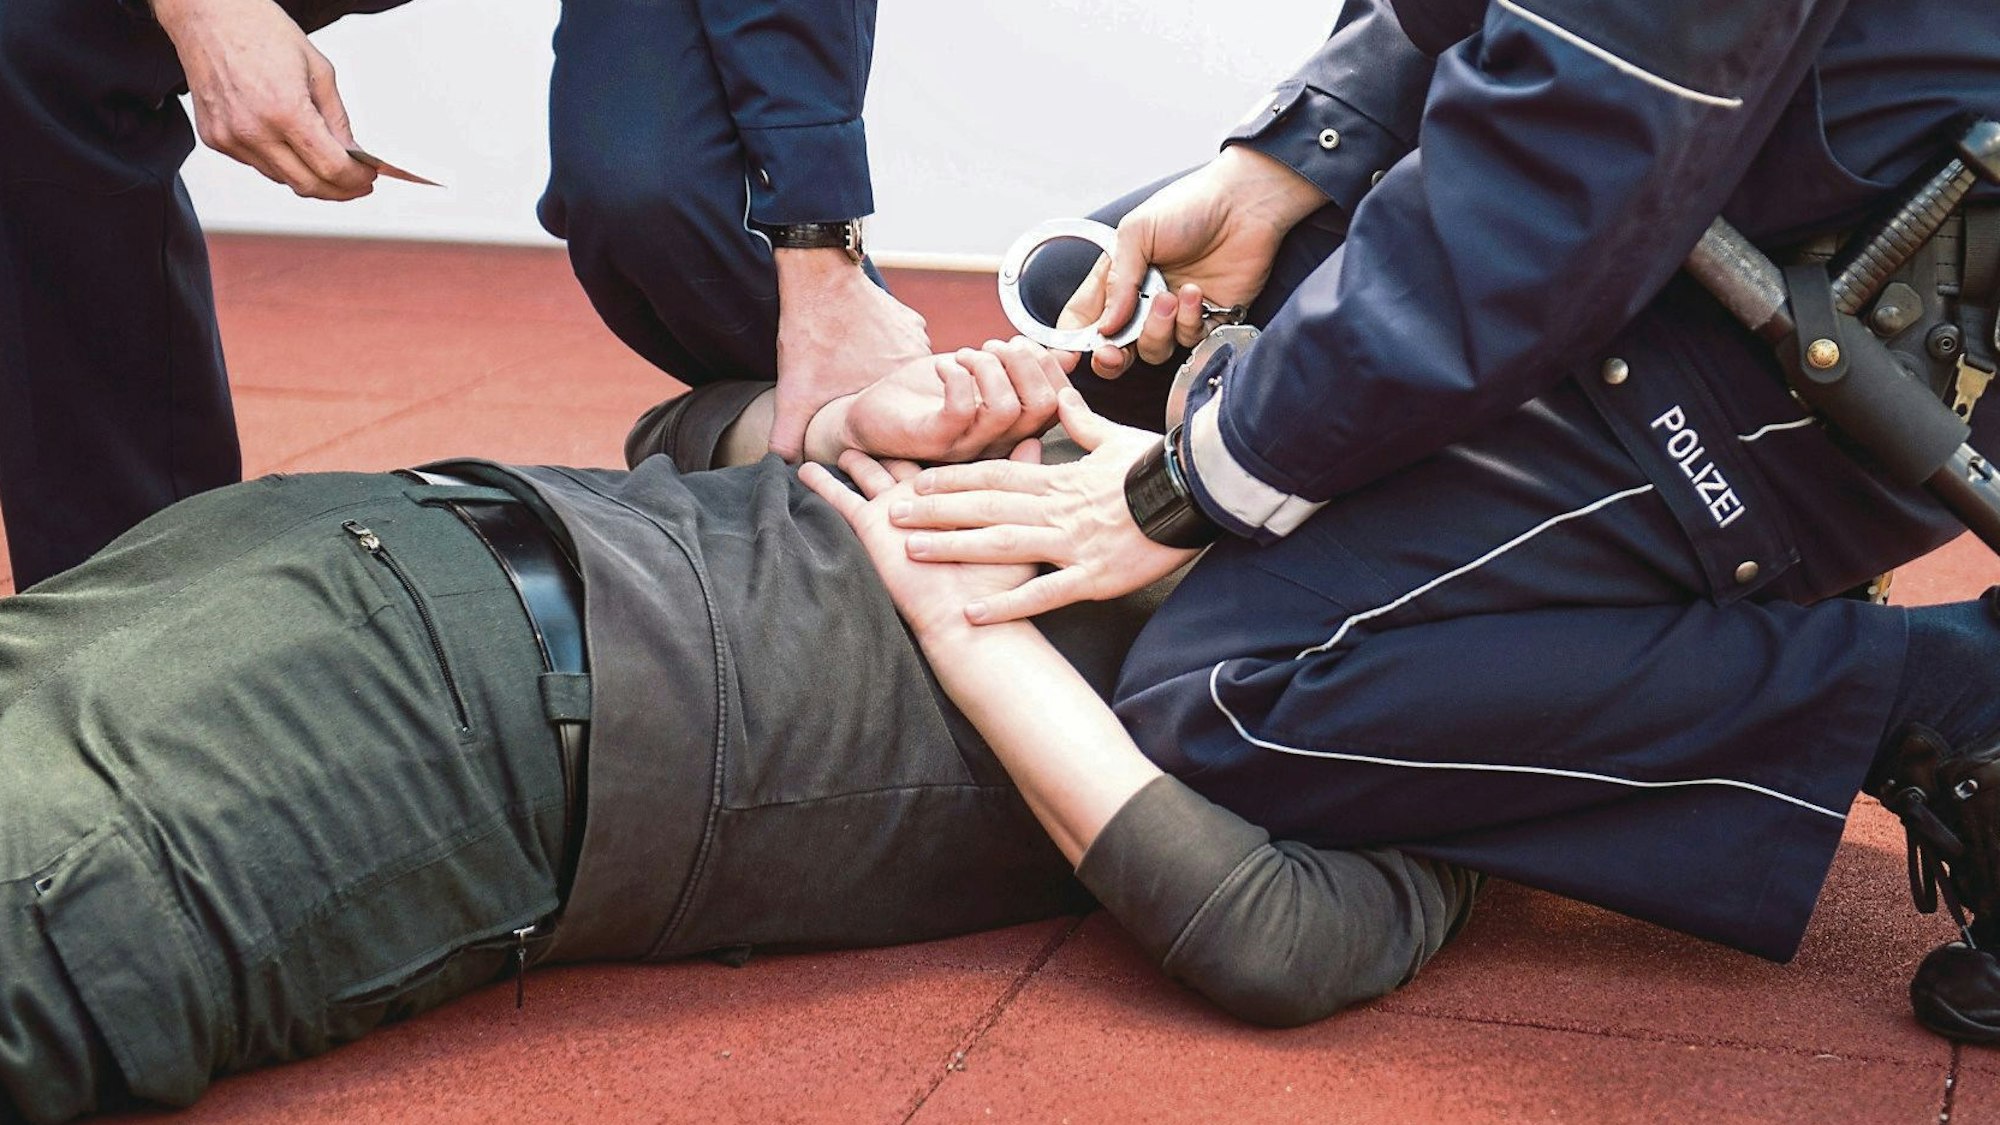 Ein Polizist kniet auf einem Mann, der auf dem Bauch liegt, und will ihm Handschellen anlegen. Ein weiterer Polizist hält eine Hand des Mannes fest.